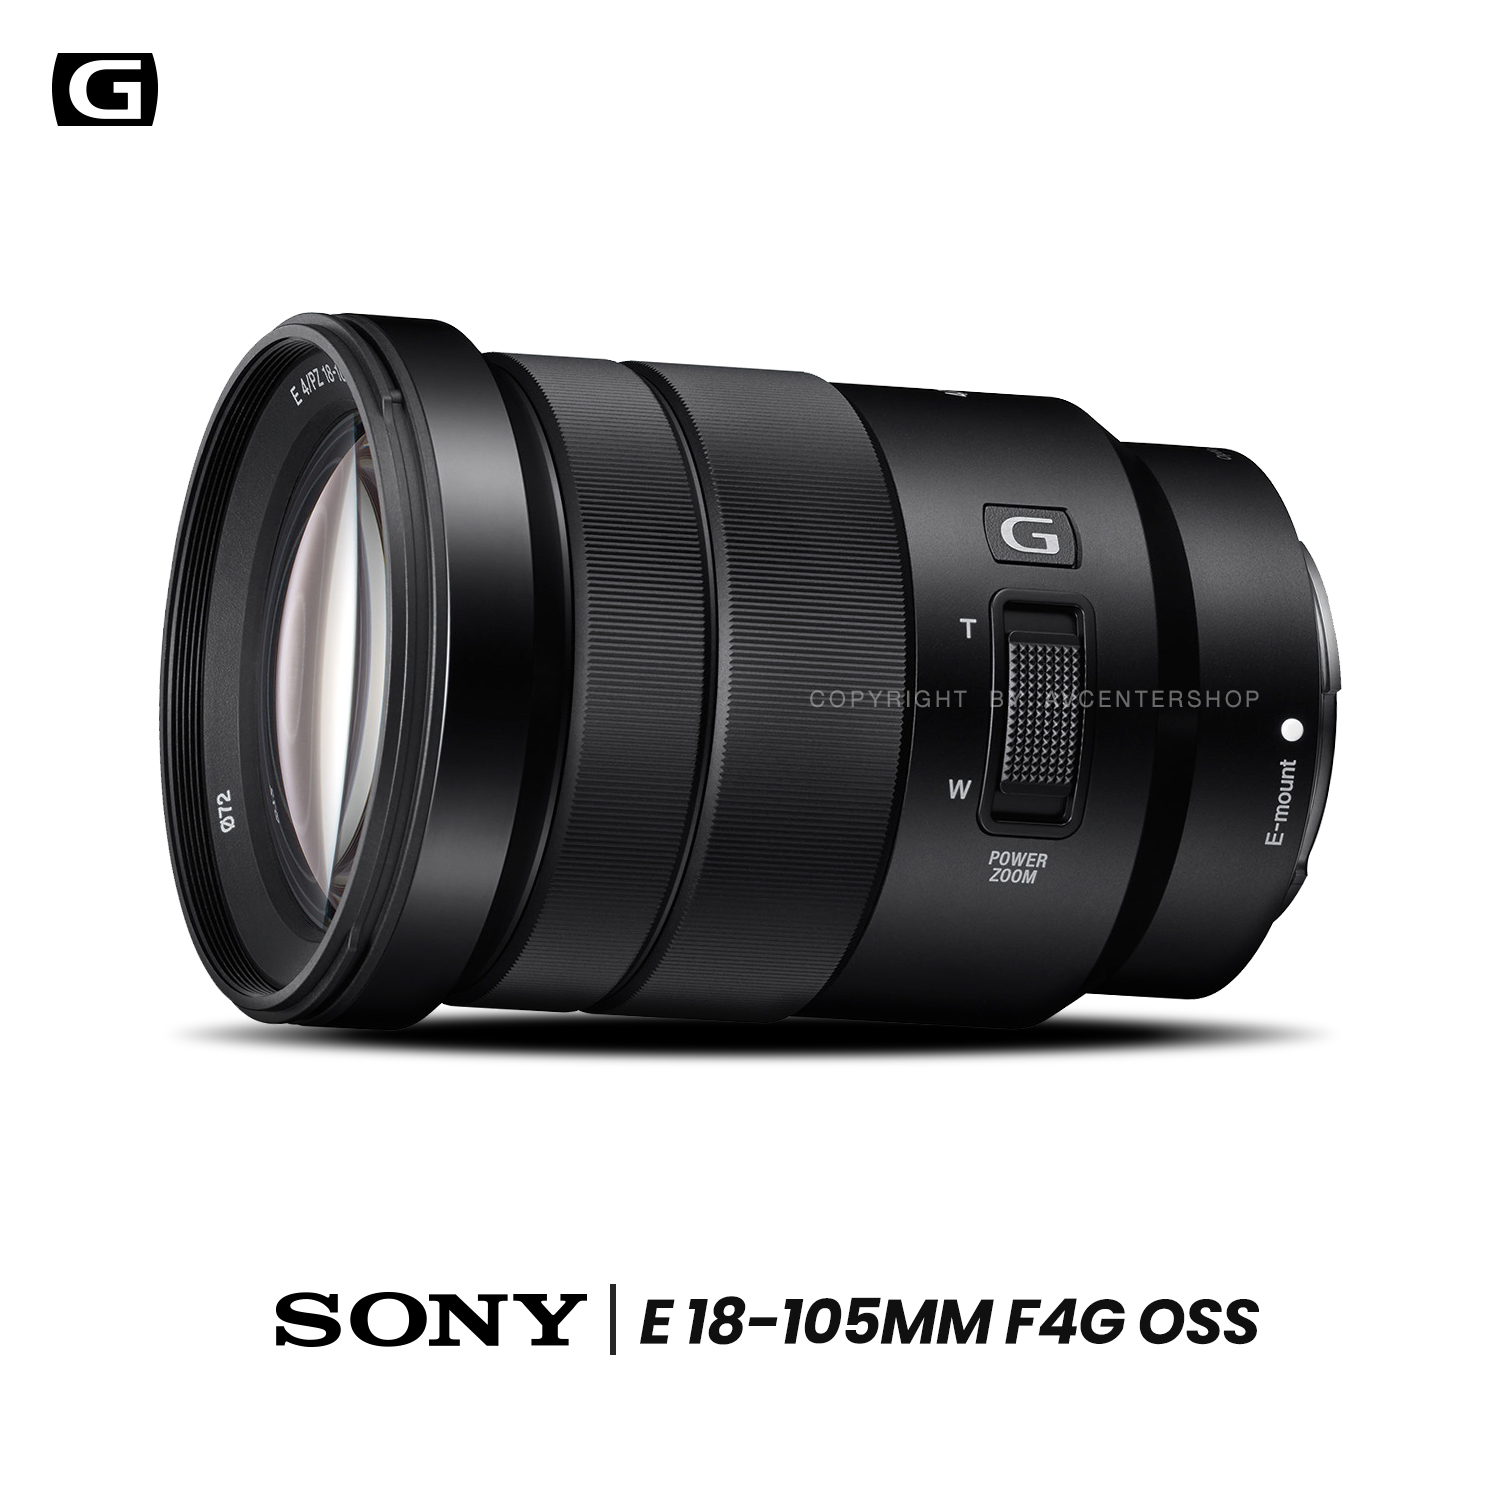 Sony Lens E 18-105 mm. F4G OSS